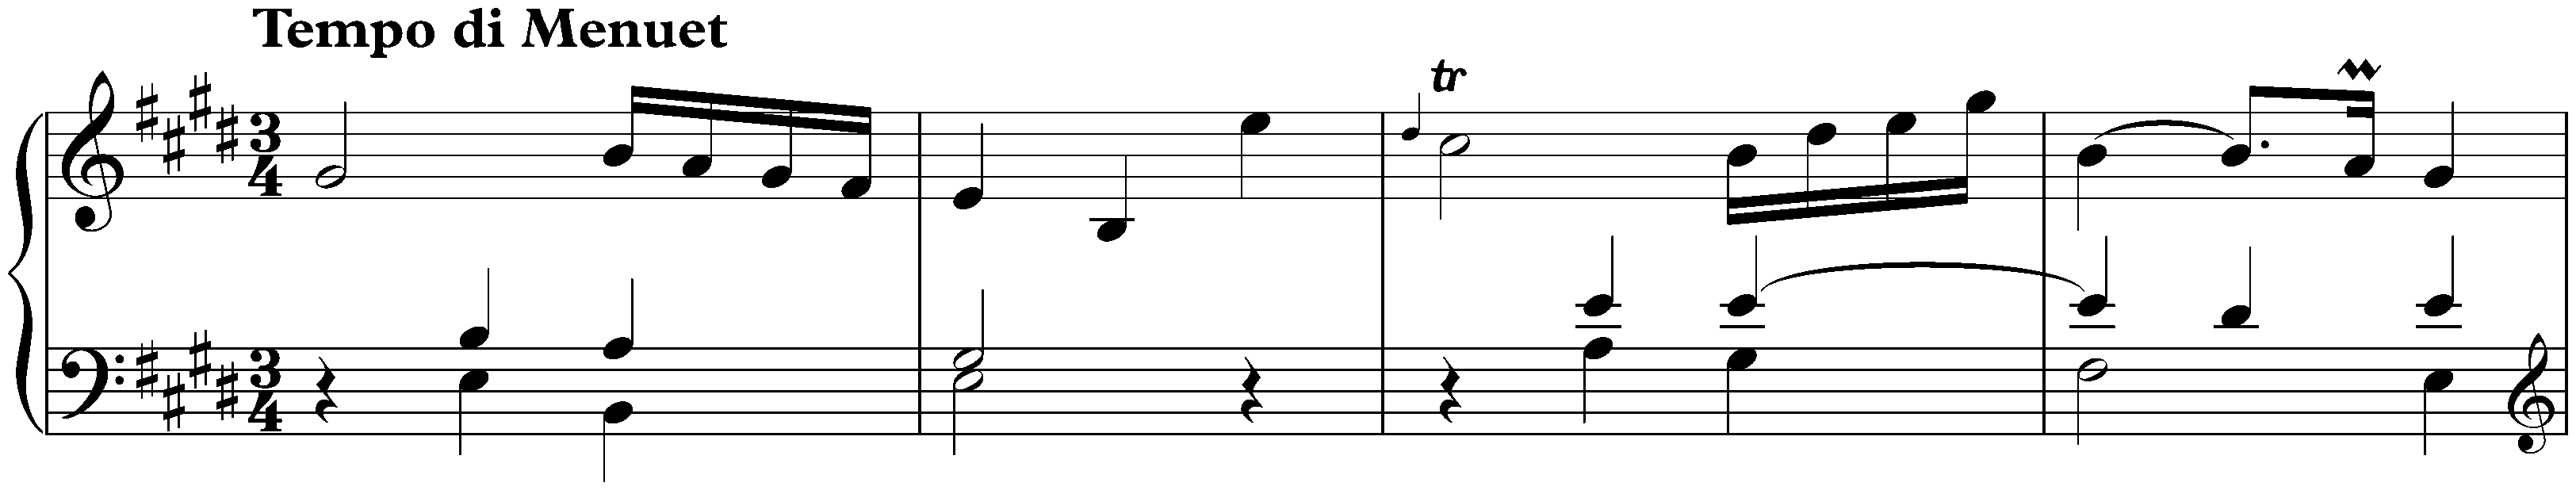 Sonata in E major, Hob. XVI:22; 3. Finale: Tempo di Menuet